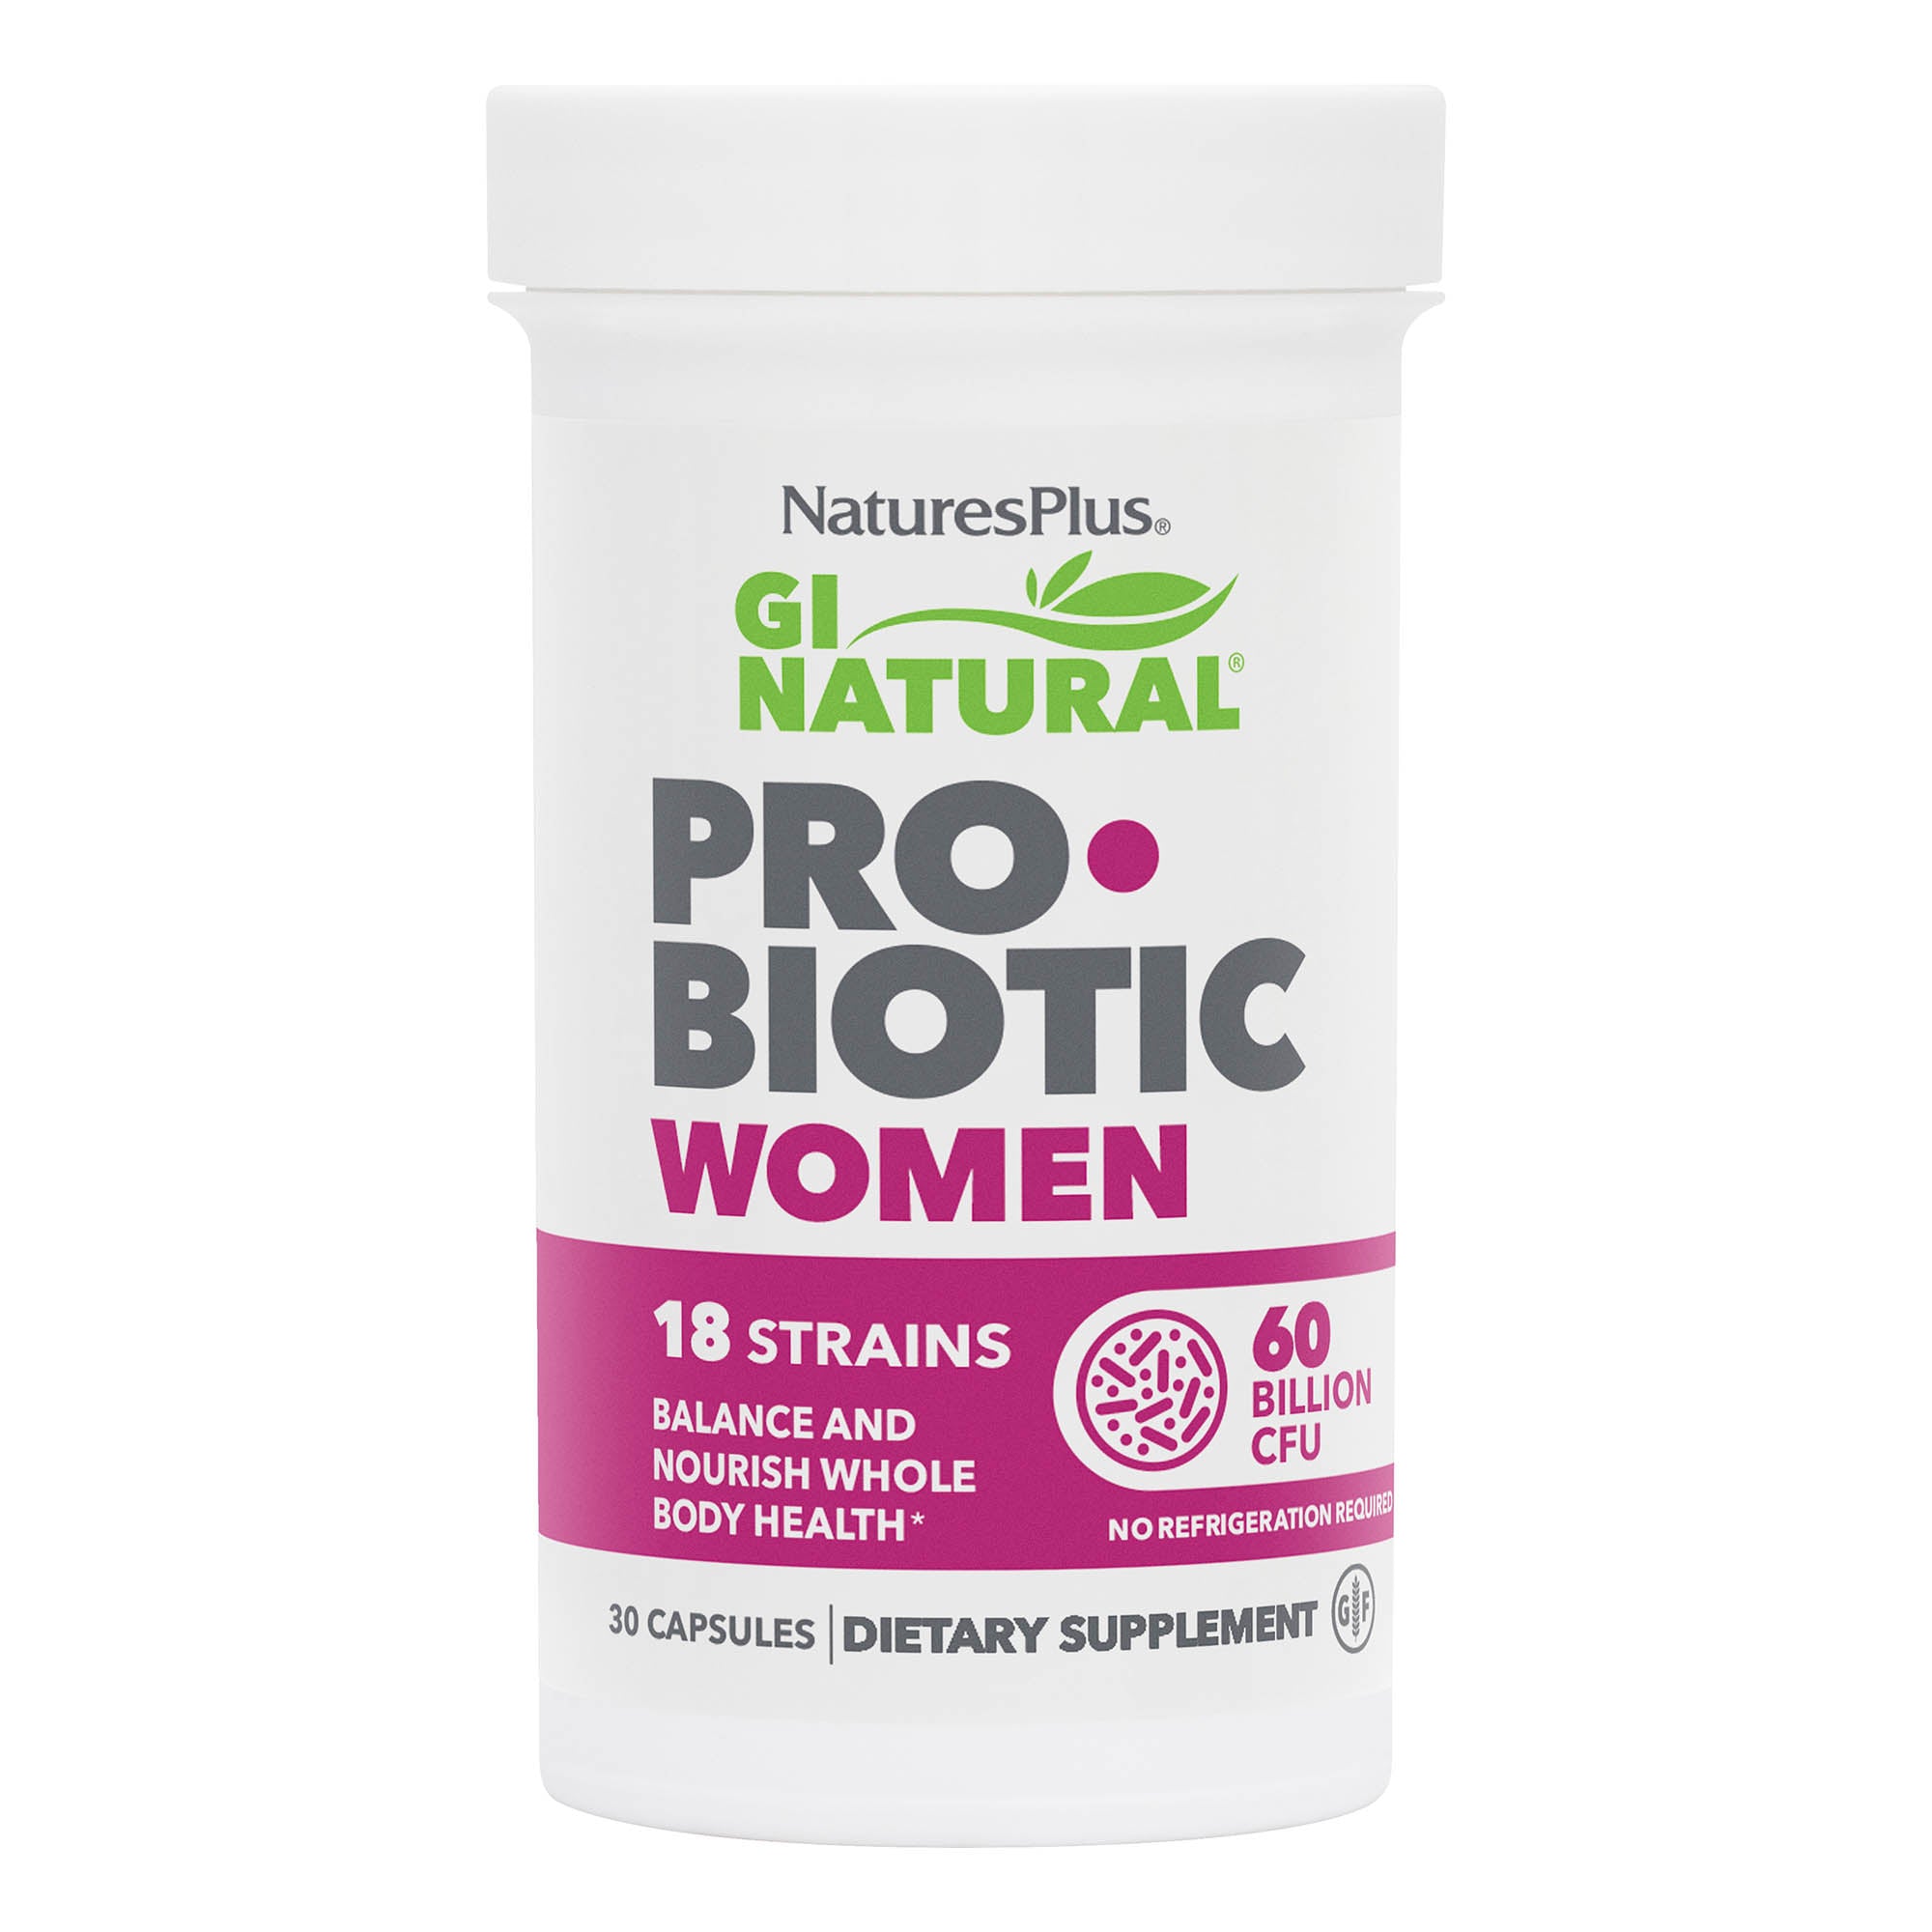 GI Natural® Probiotic Women